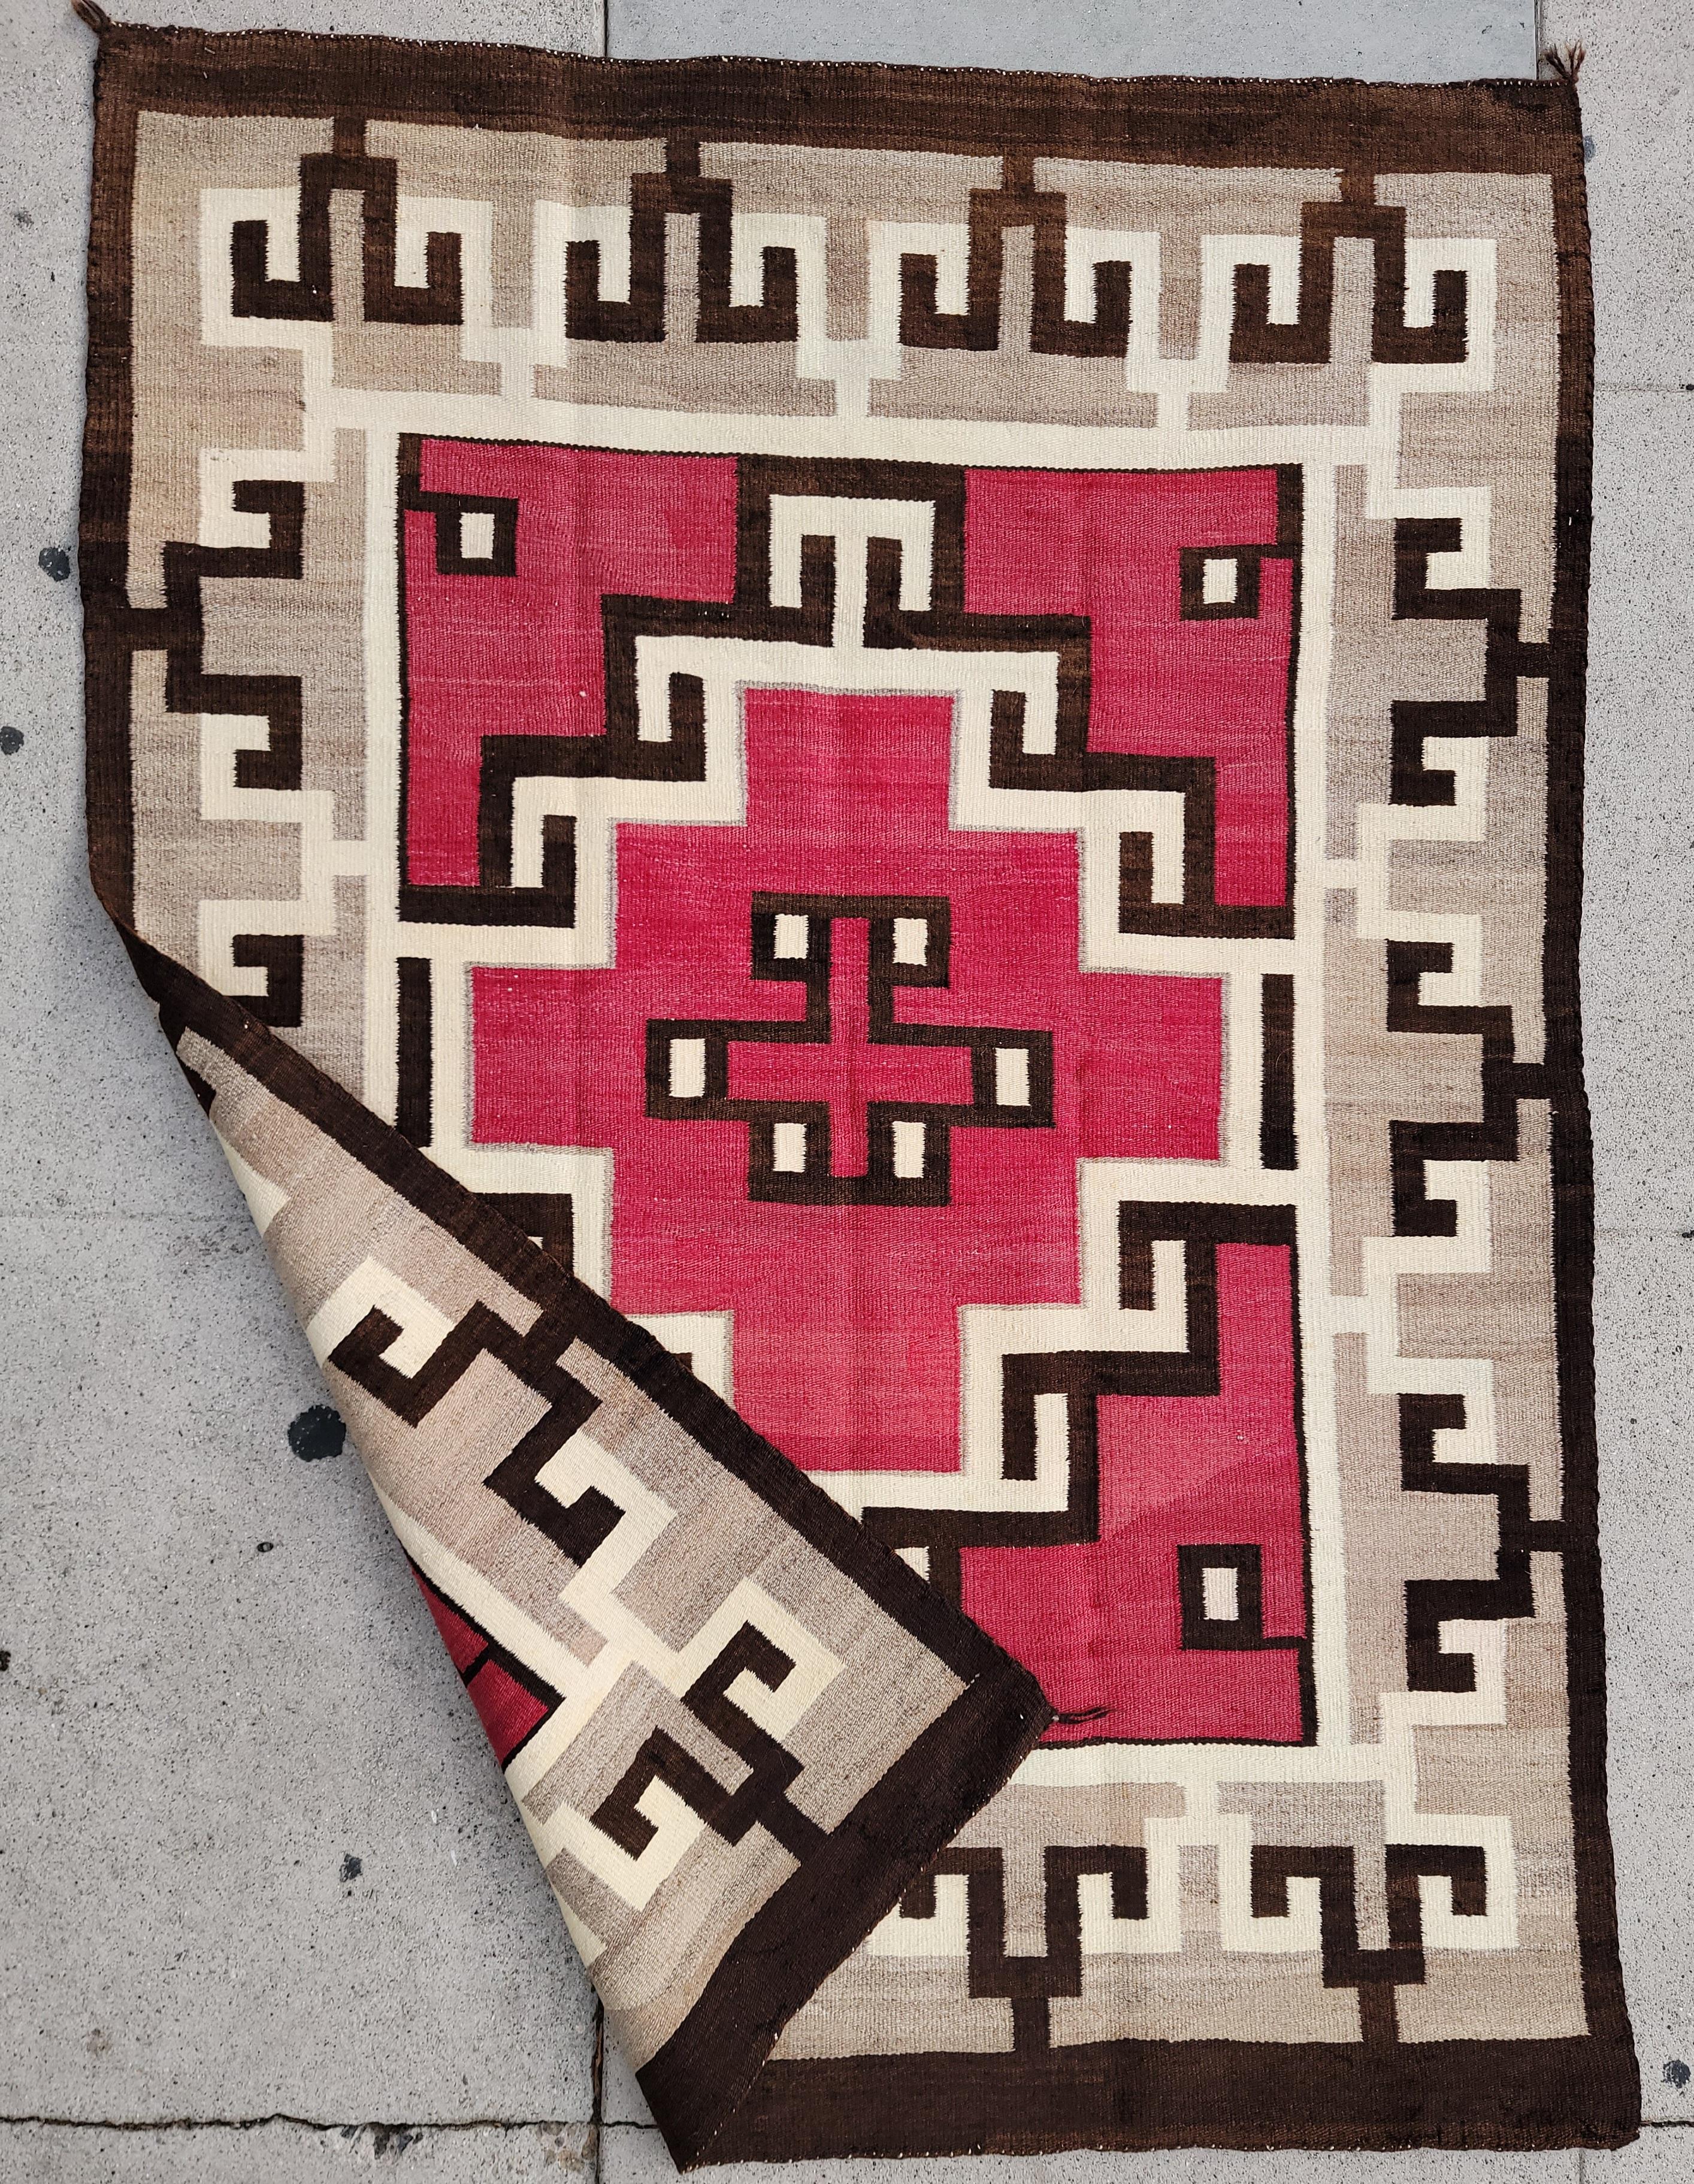 Cet étonnant tissage Navajo du début du 20e siècle / tapis dans le diamant Latchook et rouge centre du tapis. Ce grand tapis est en bon état et a été nettoyé professionnellement. Il est très difficile de trouver des tissages de cette taille dans un